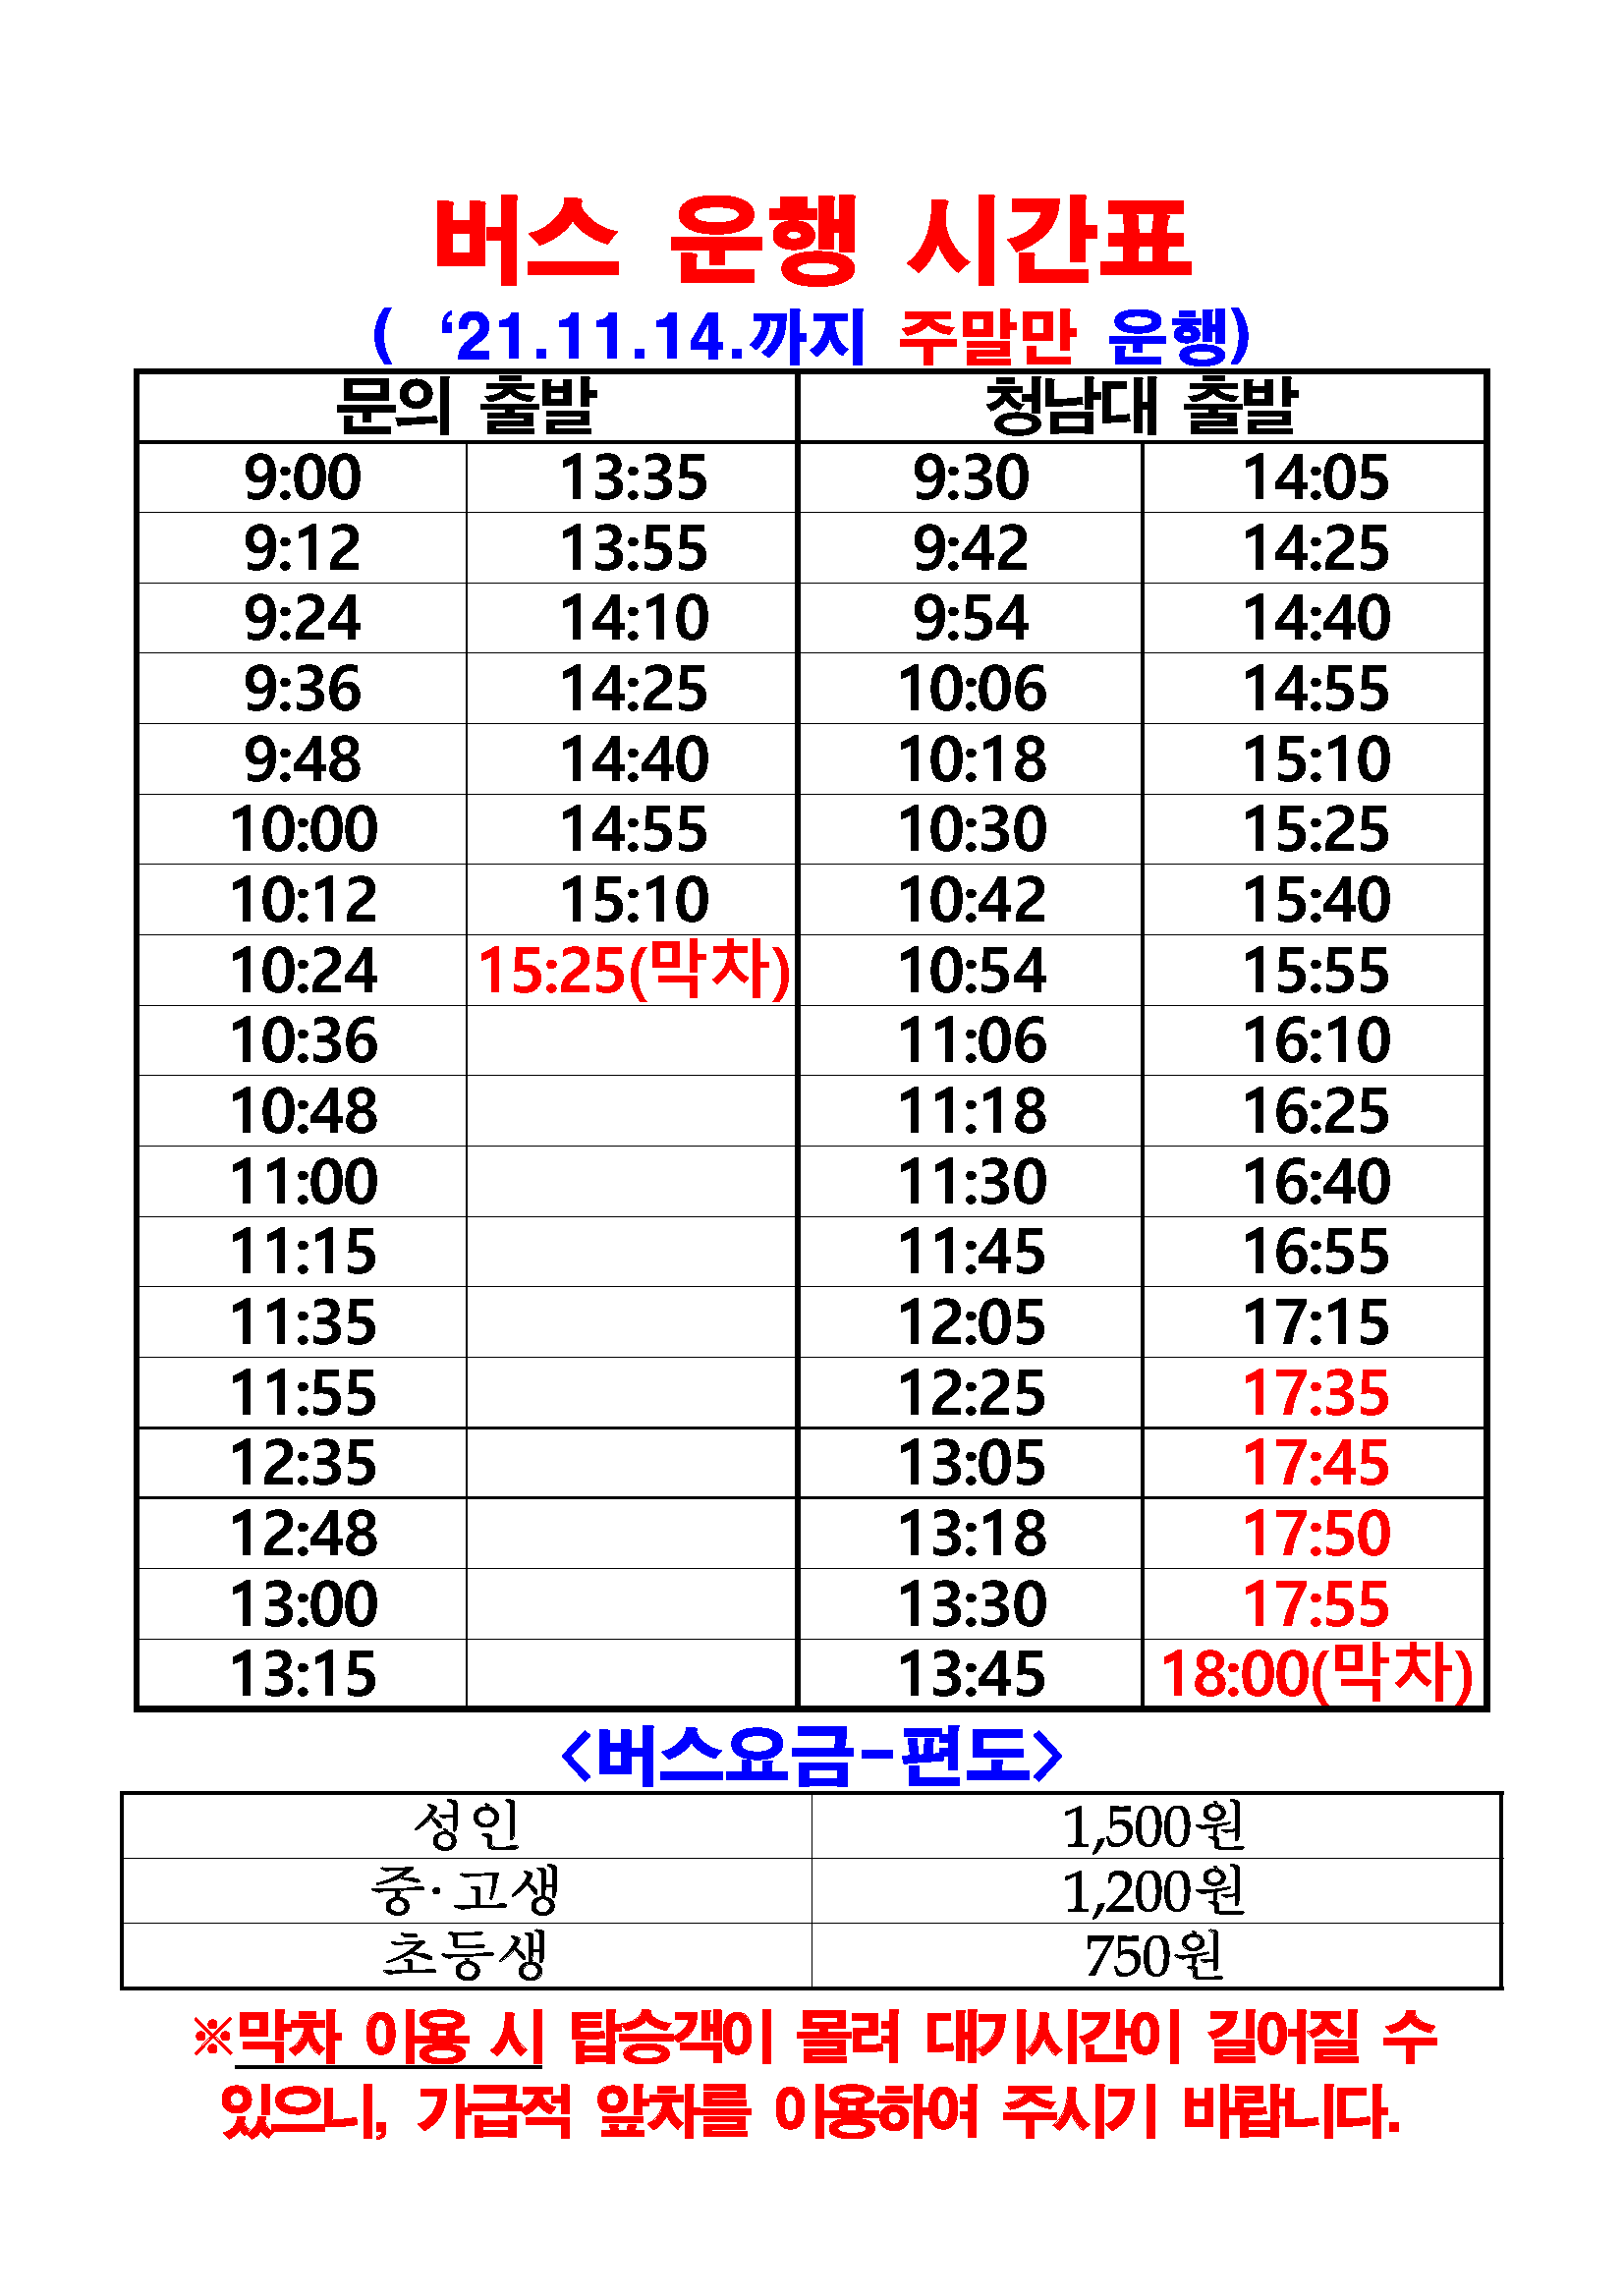 버스 운행 시간표